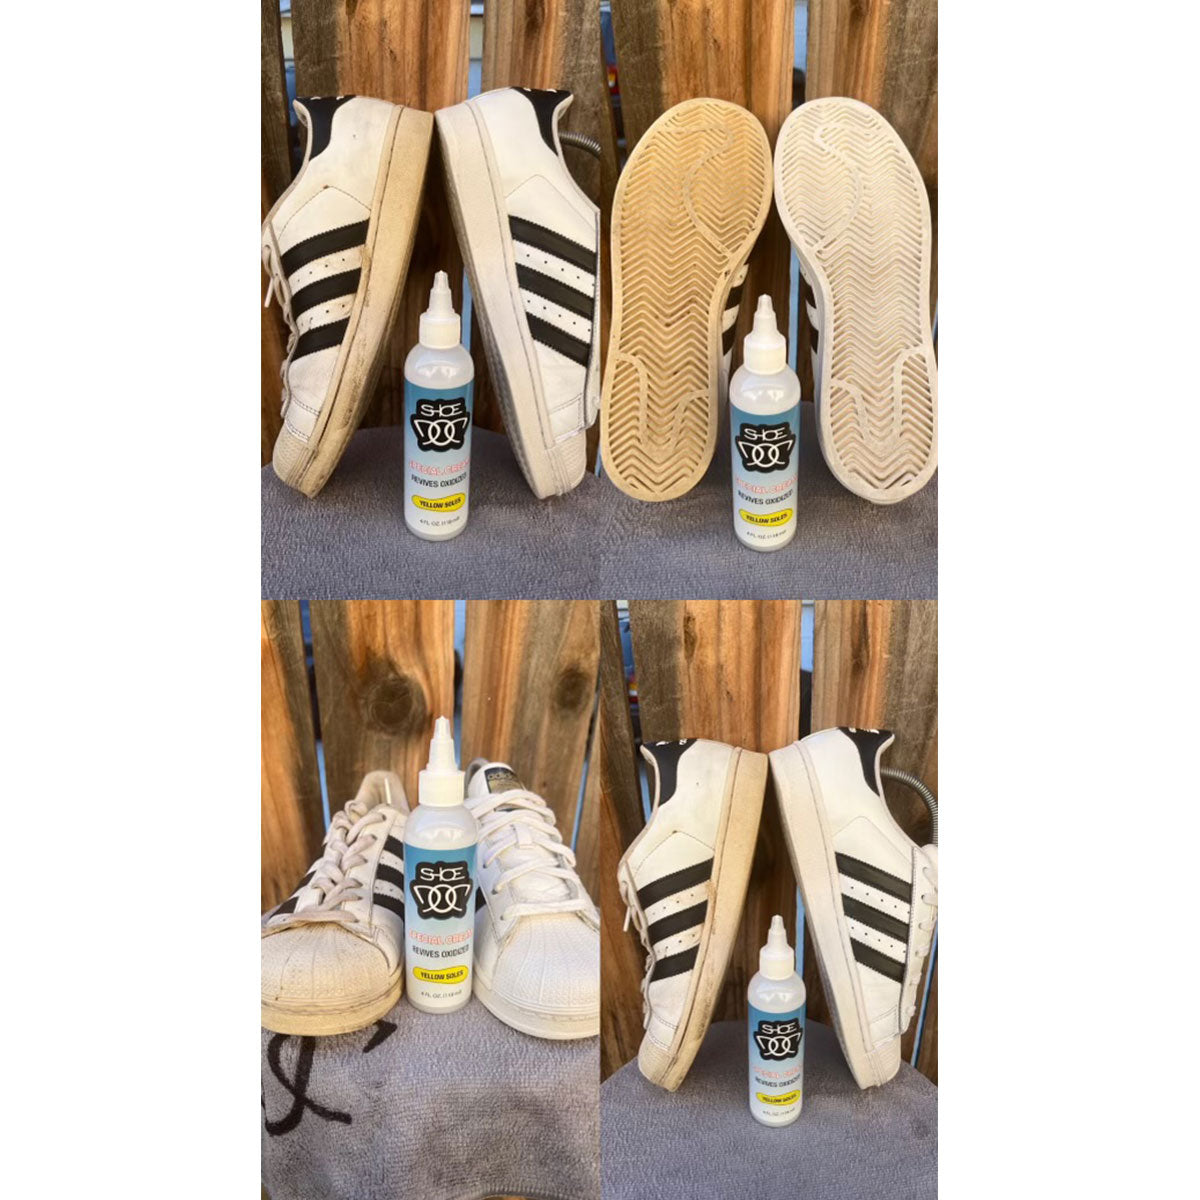 Foamzone150 Cleaner Kit,Shoe Doc Fz150 Shoe Cleaner Foam Kit